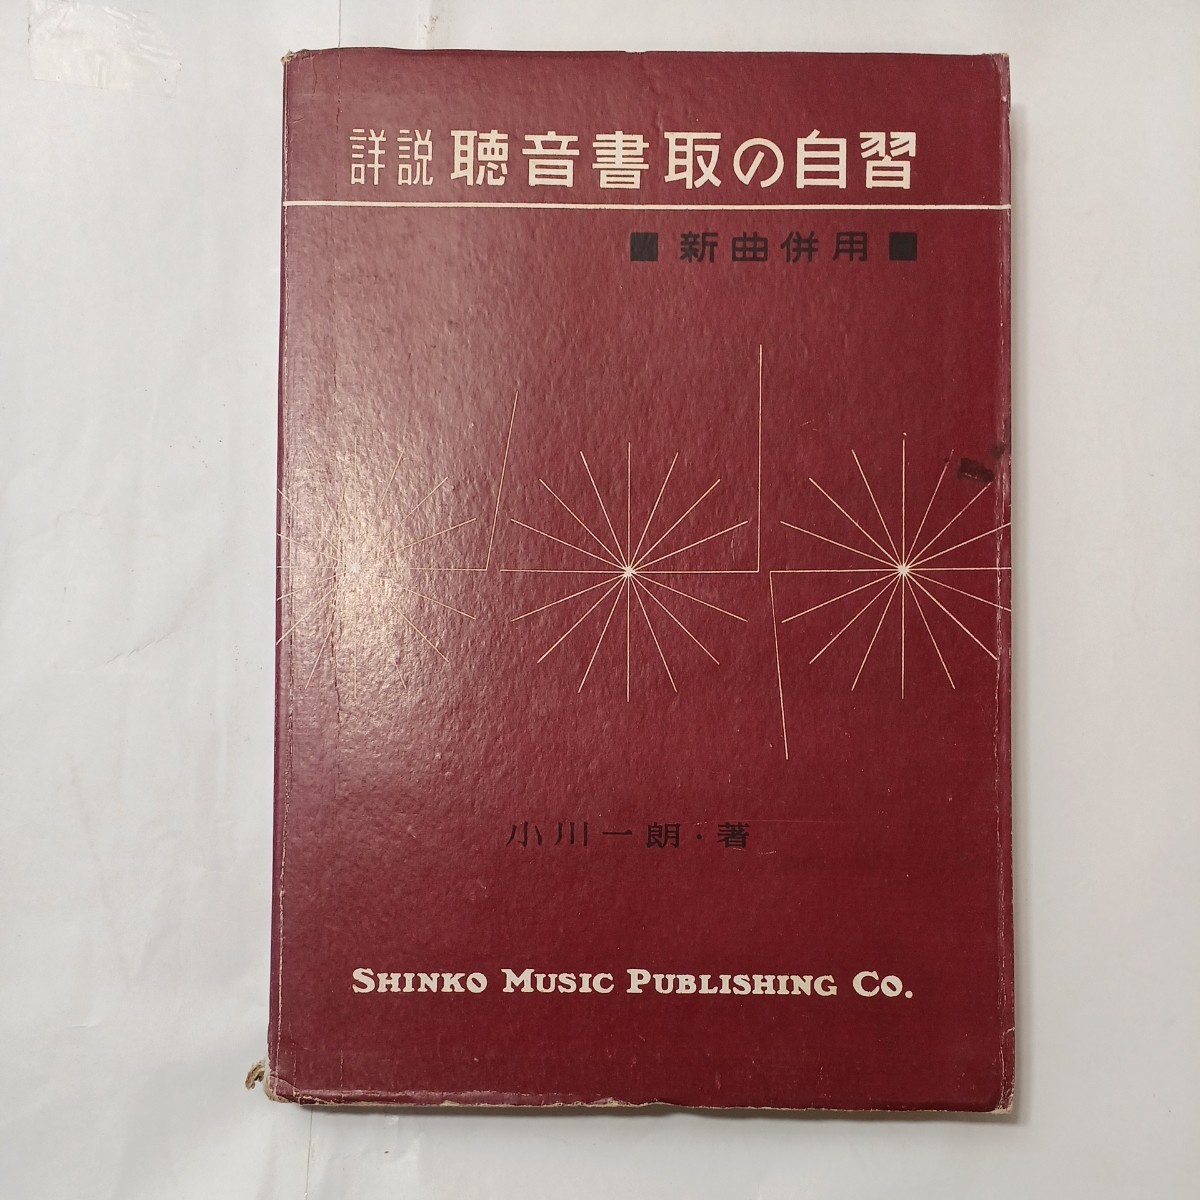 zaa-512 対位法 黒澤隆朝(著) 出版社 全音教科書 昭和25年(1950/08/20